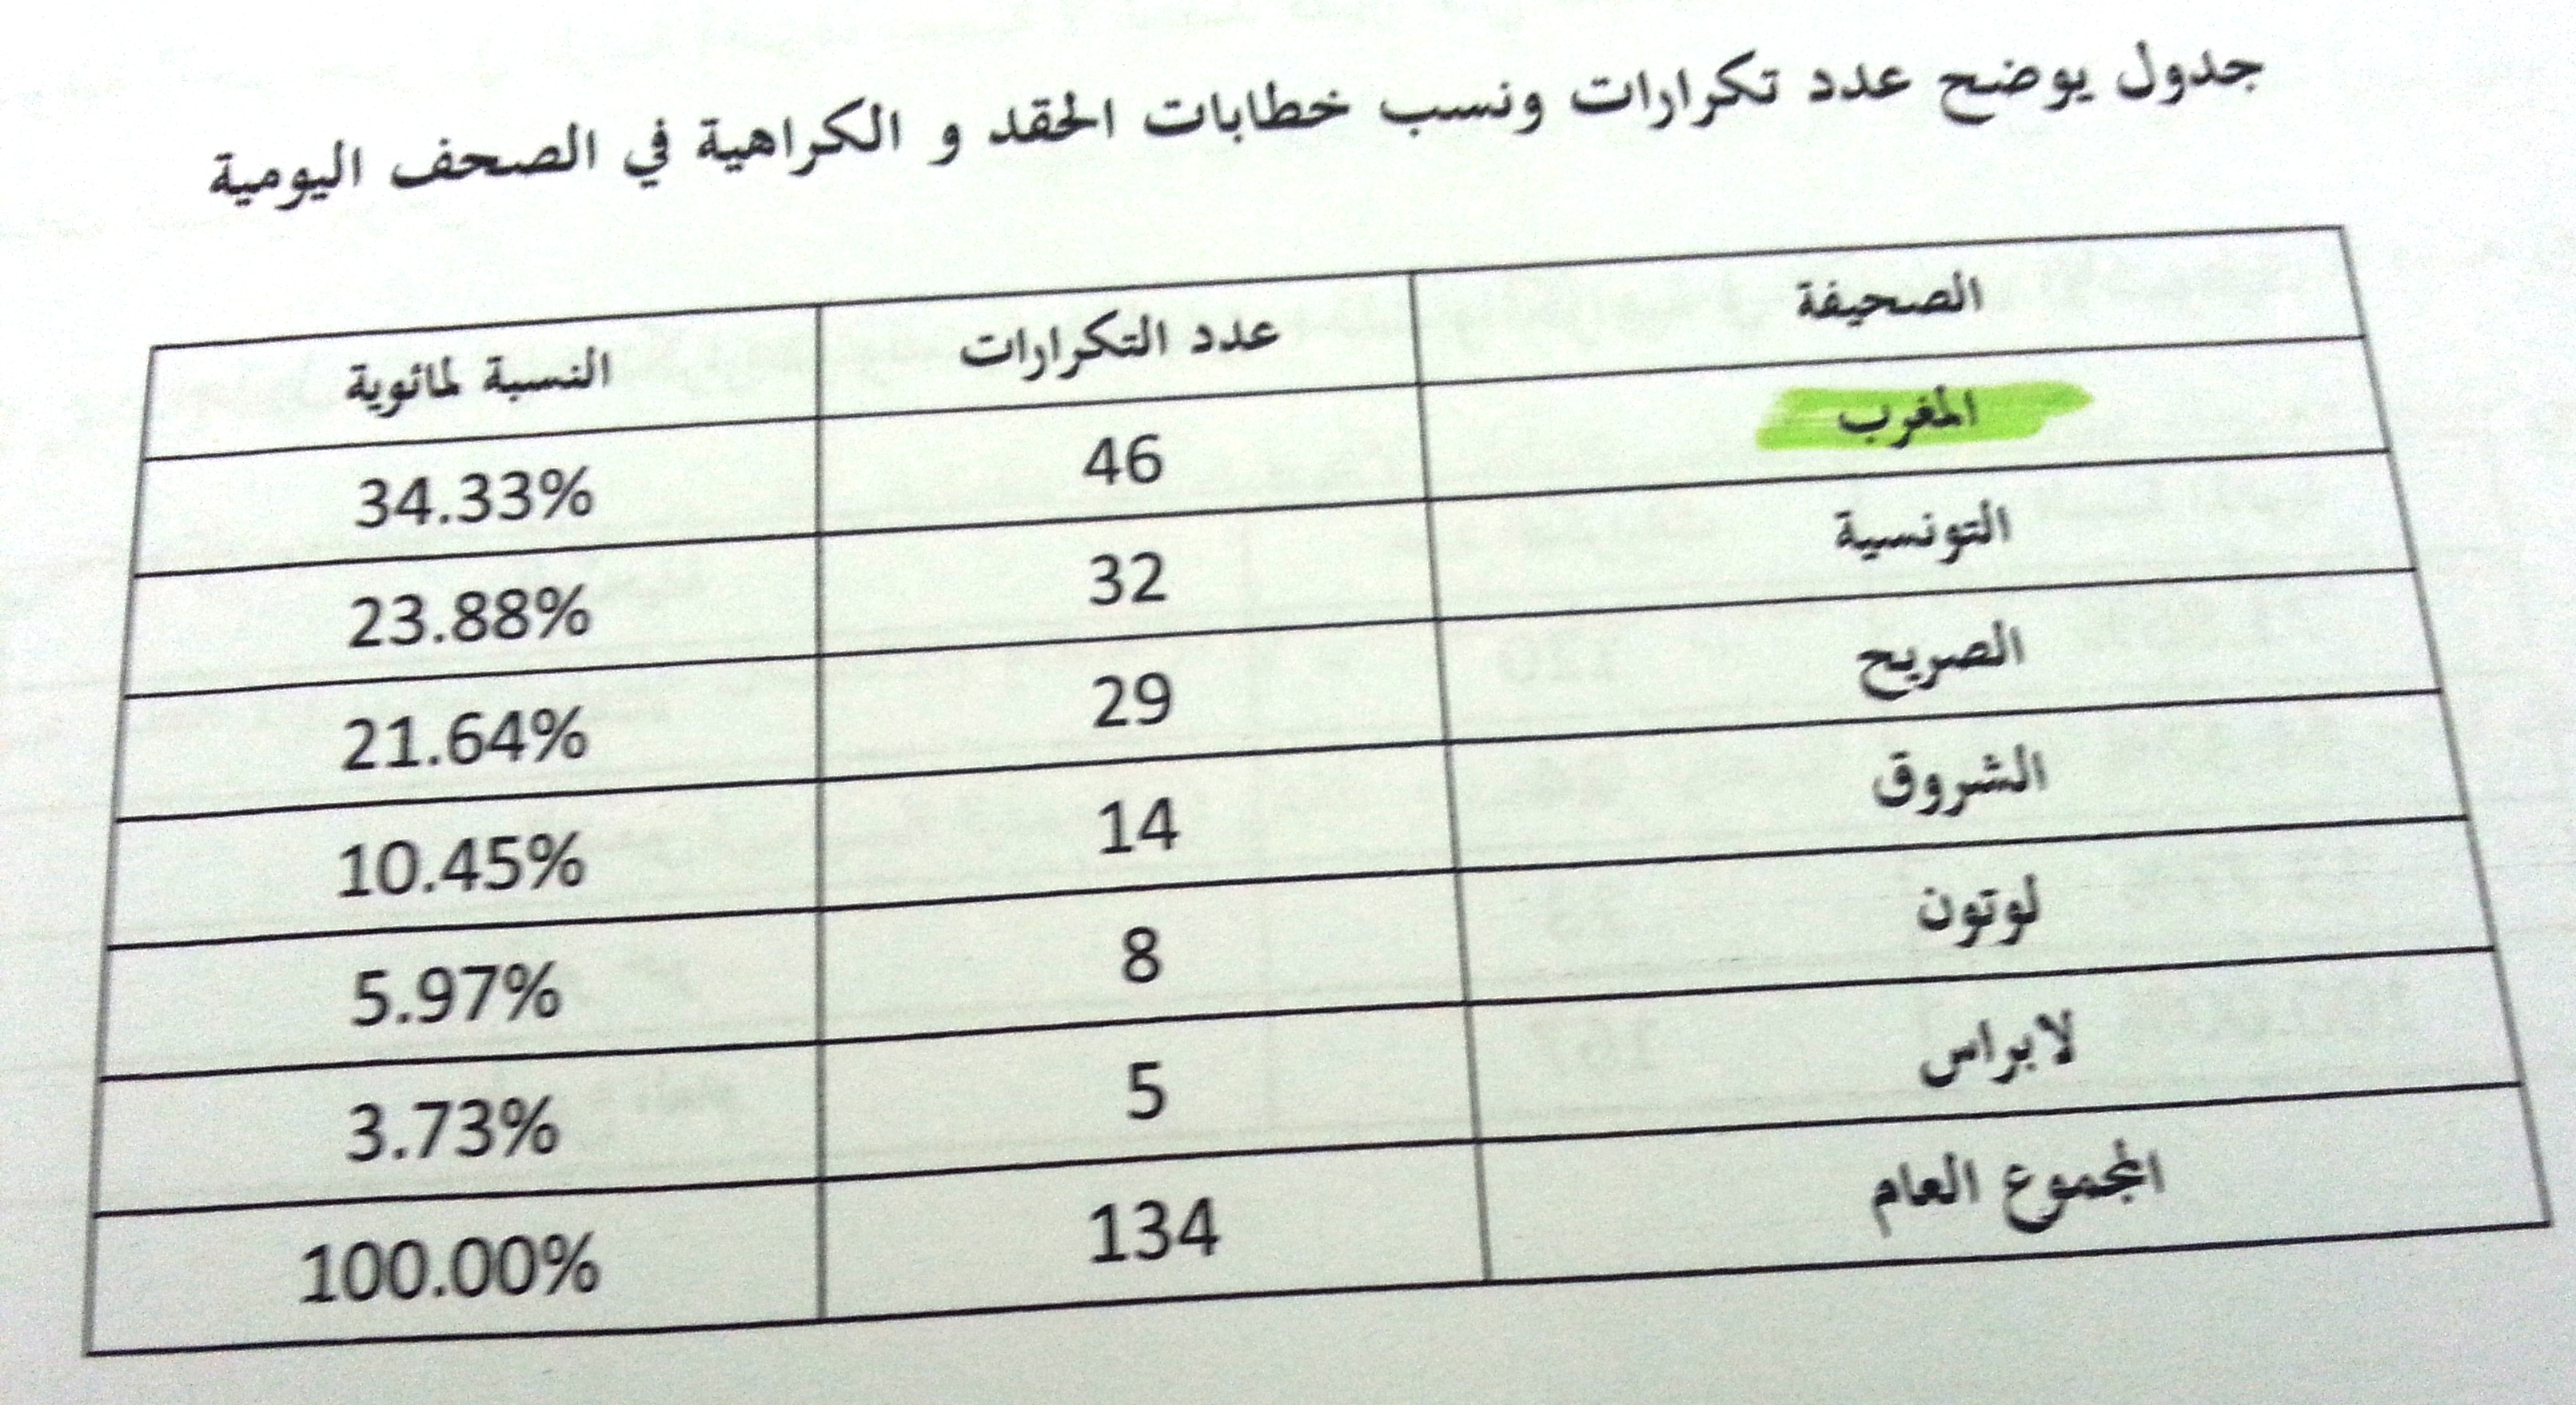 Tableau relatif à la répétition et diffusion des messages de haine dans les journaux quotidiens tunisiens